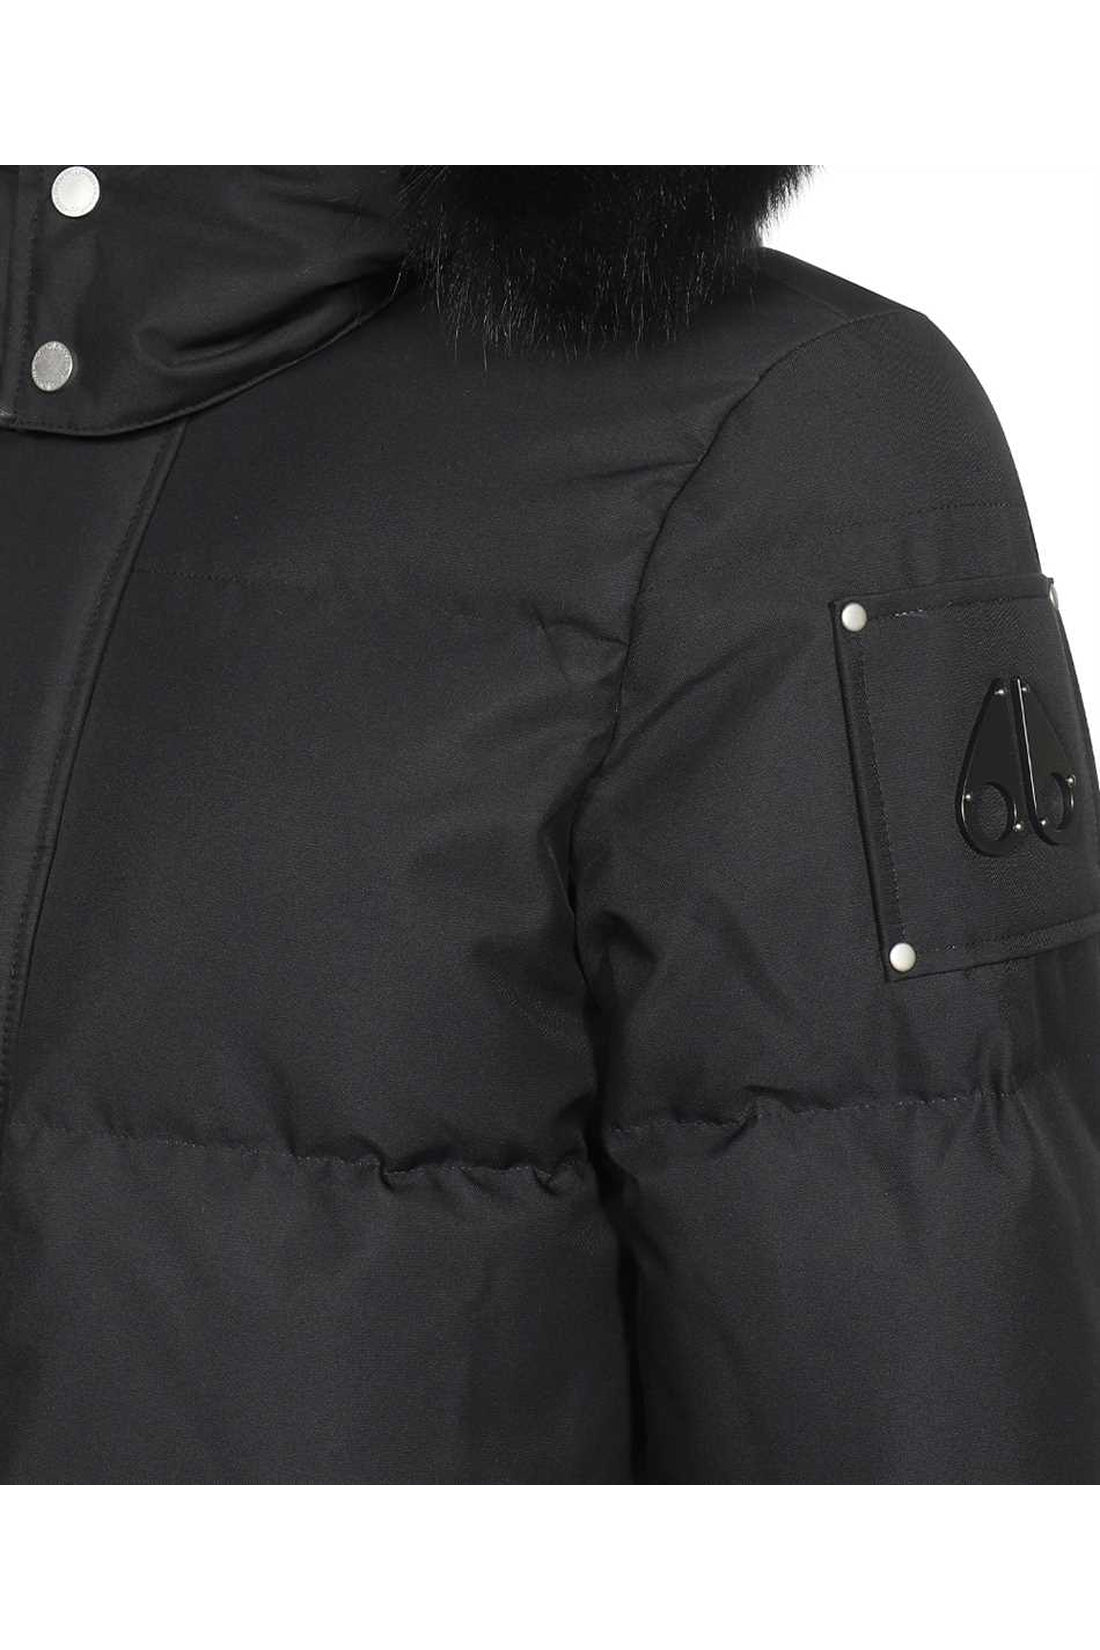 Moose Knuckles-OUTLET-SALE-Fur hood down jacket-ARCHIVIST